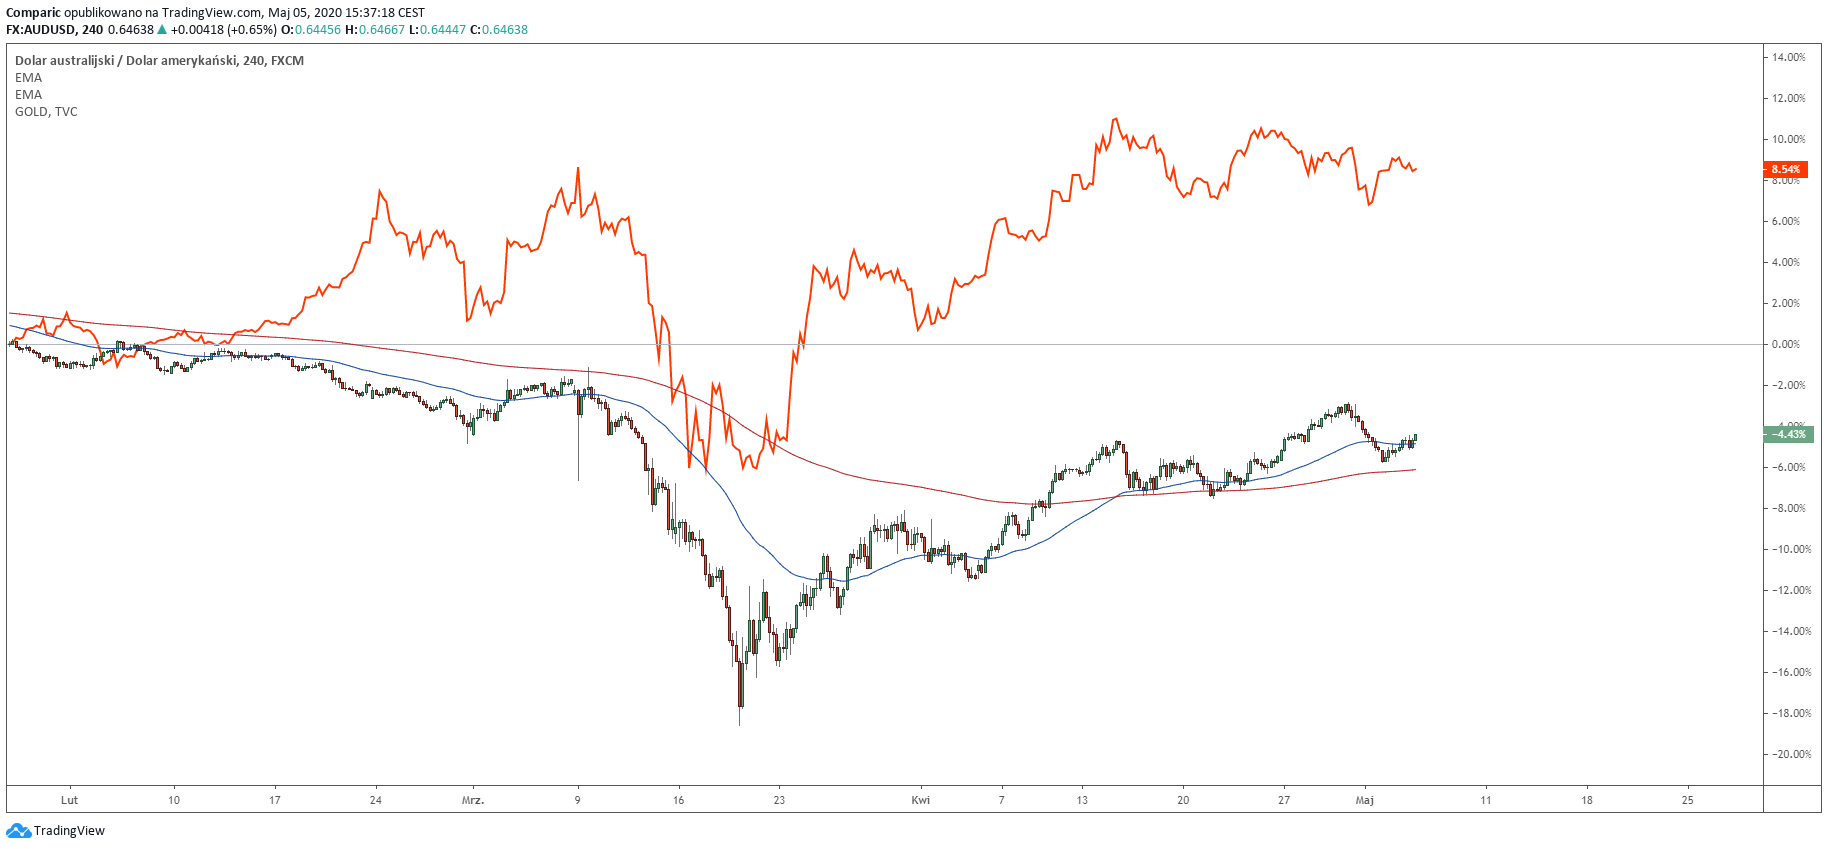 Wykres złota (liniowy) i AUD/USD (świecowy). Źródło: Tradingview.com